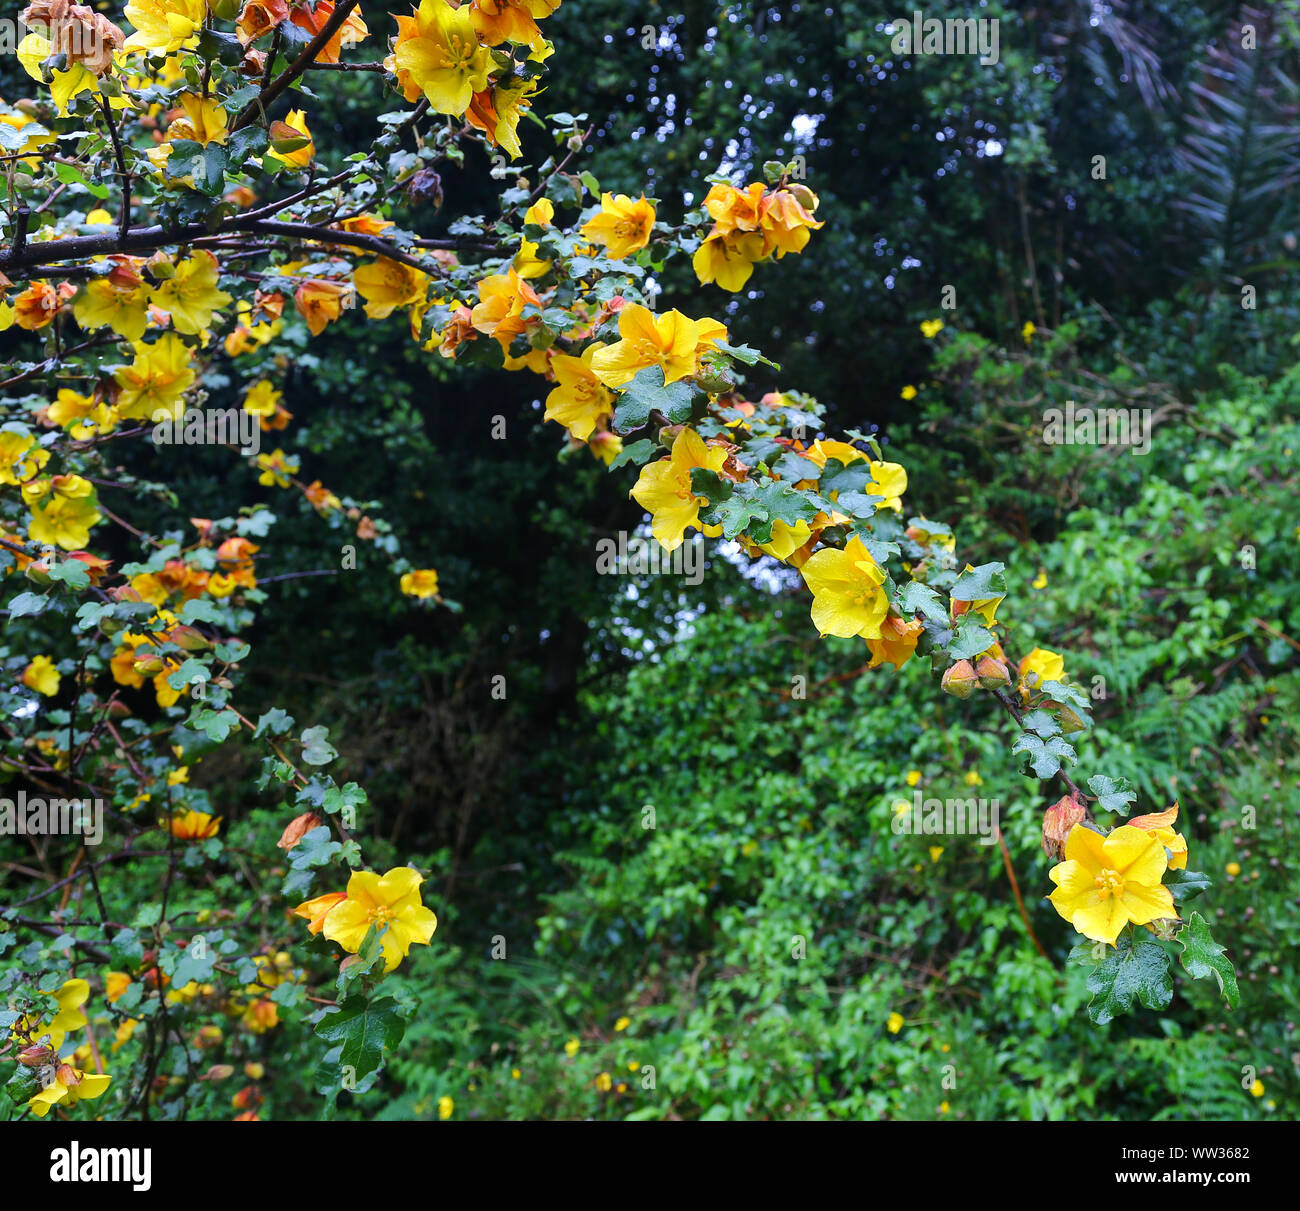 Les fleurs jaunes d'un Fremontodendron californicum, nom commun en Californie, flannelbush sur St Mary's Island, Îles Scilly, Angleterre, RU Banque D'Images